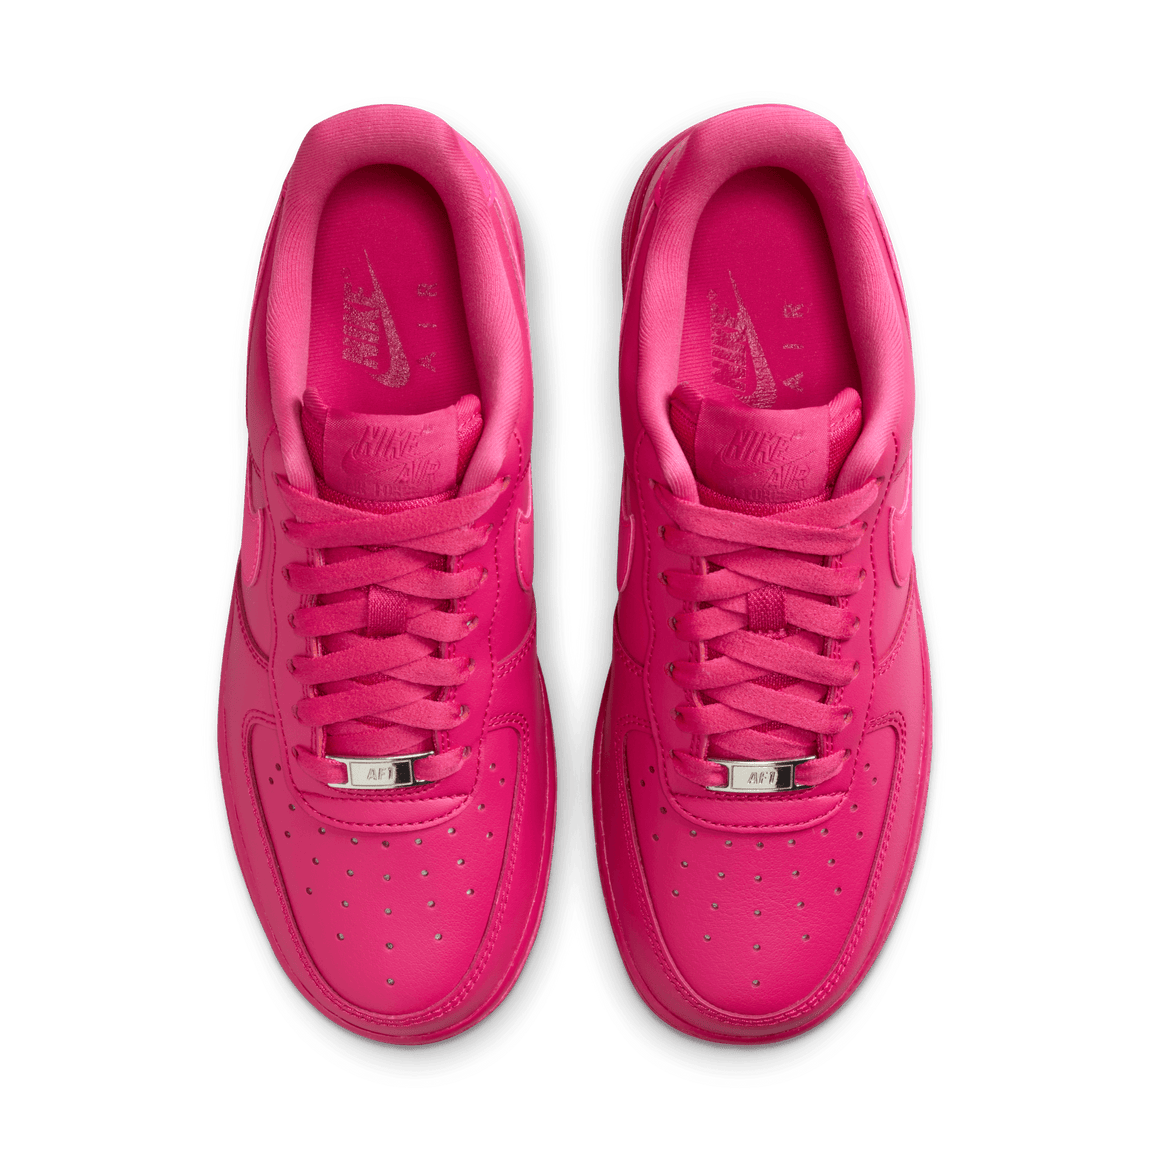 Women's Nike Air Force 1 '07 (Fireberry/Fierce Pink-Fireberry) - Women's Nike Air Force 1 '07 (Fireberry/Fierce Pink-Fireberry) - 